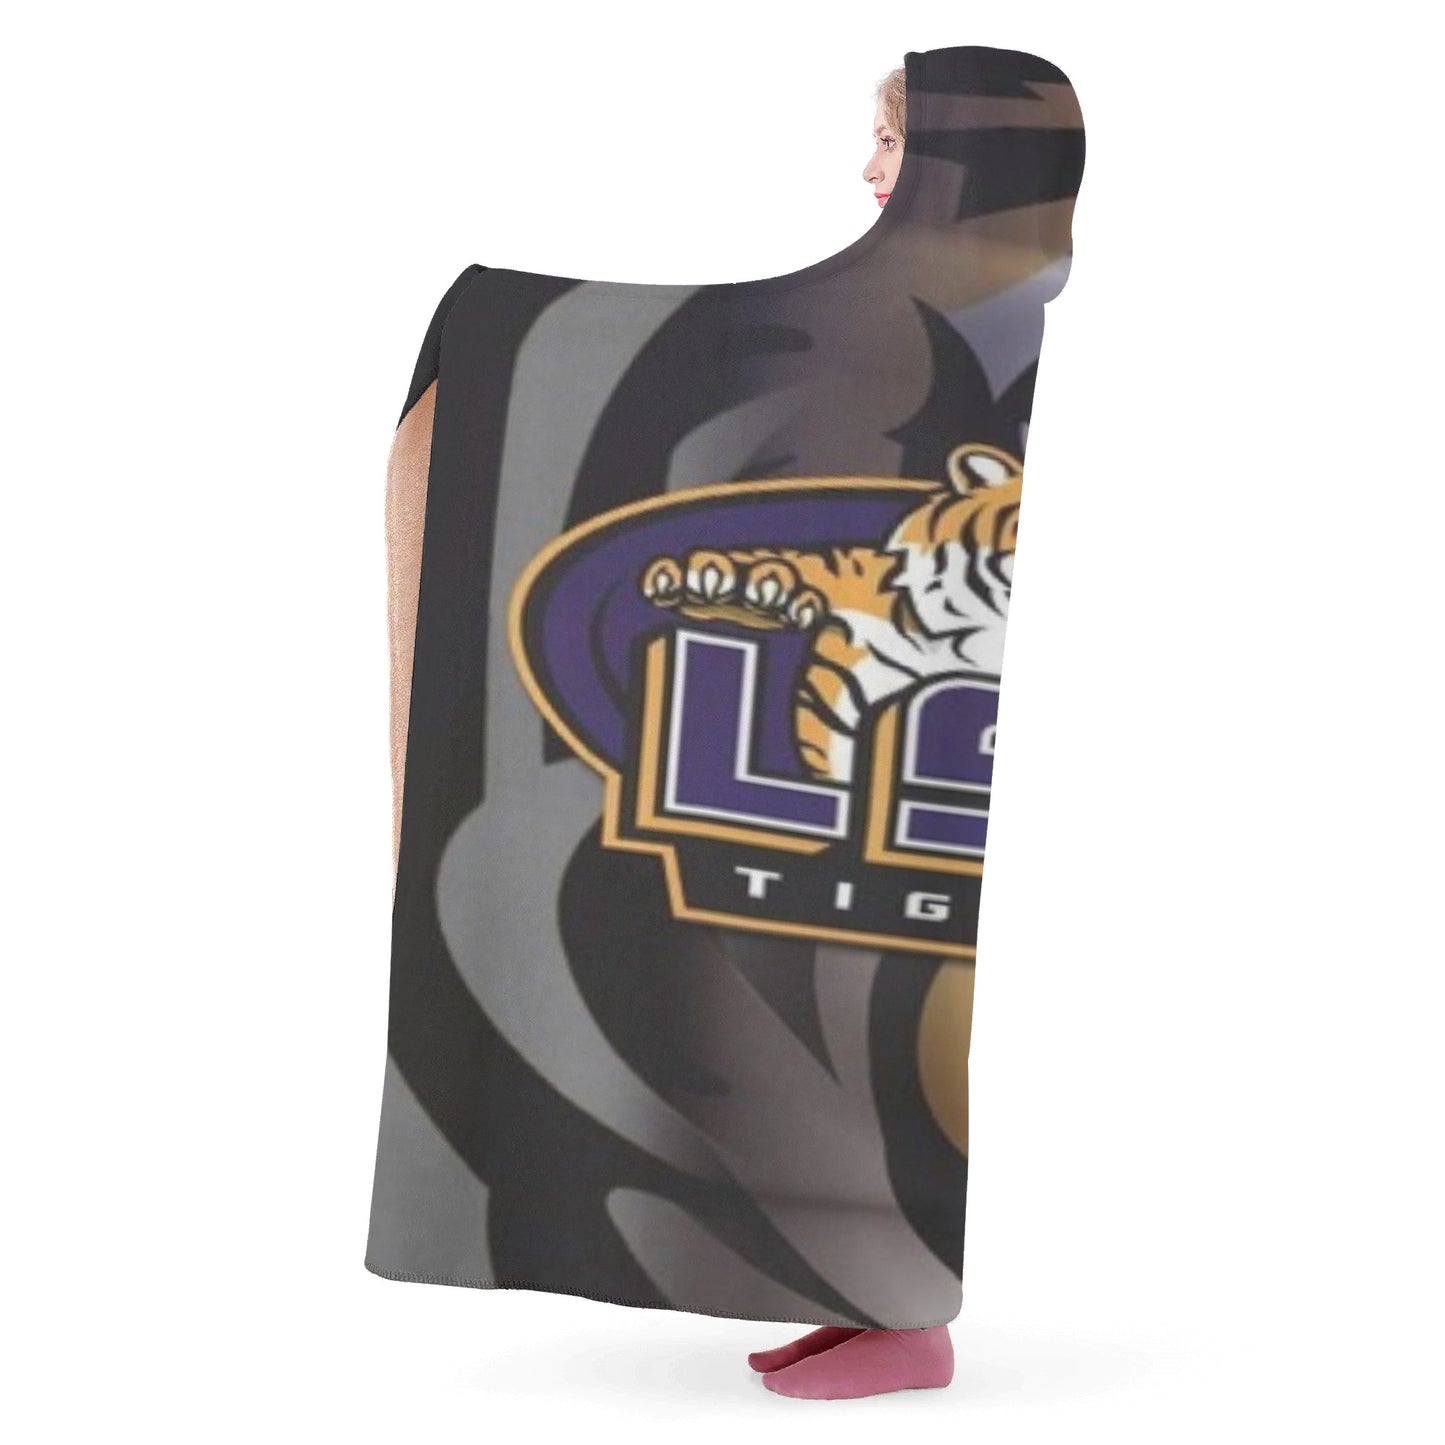 LSU Hooded Blanket